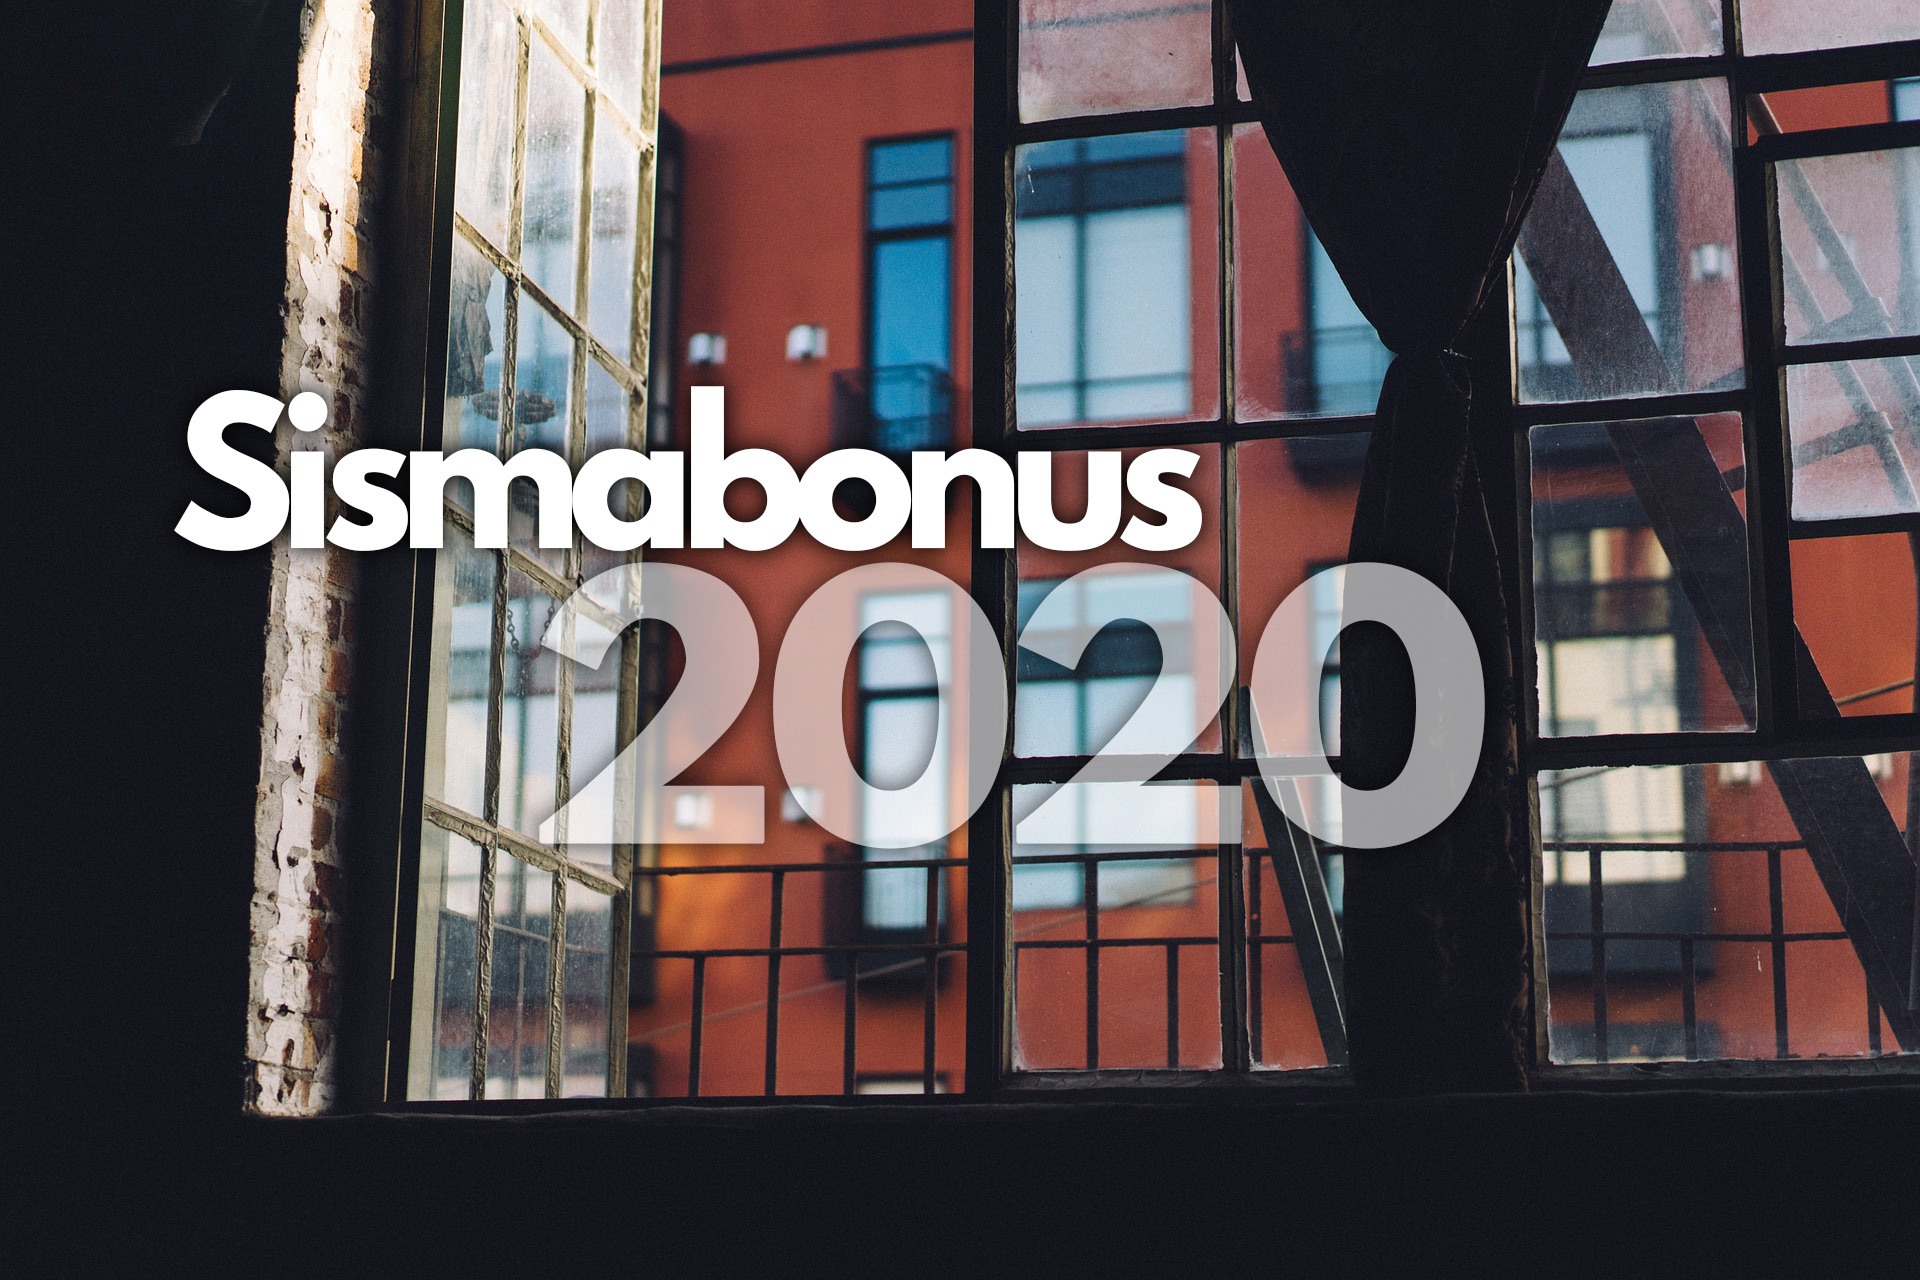 Sismabonus 2020